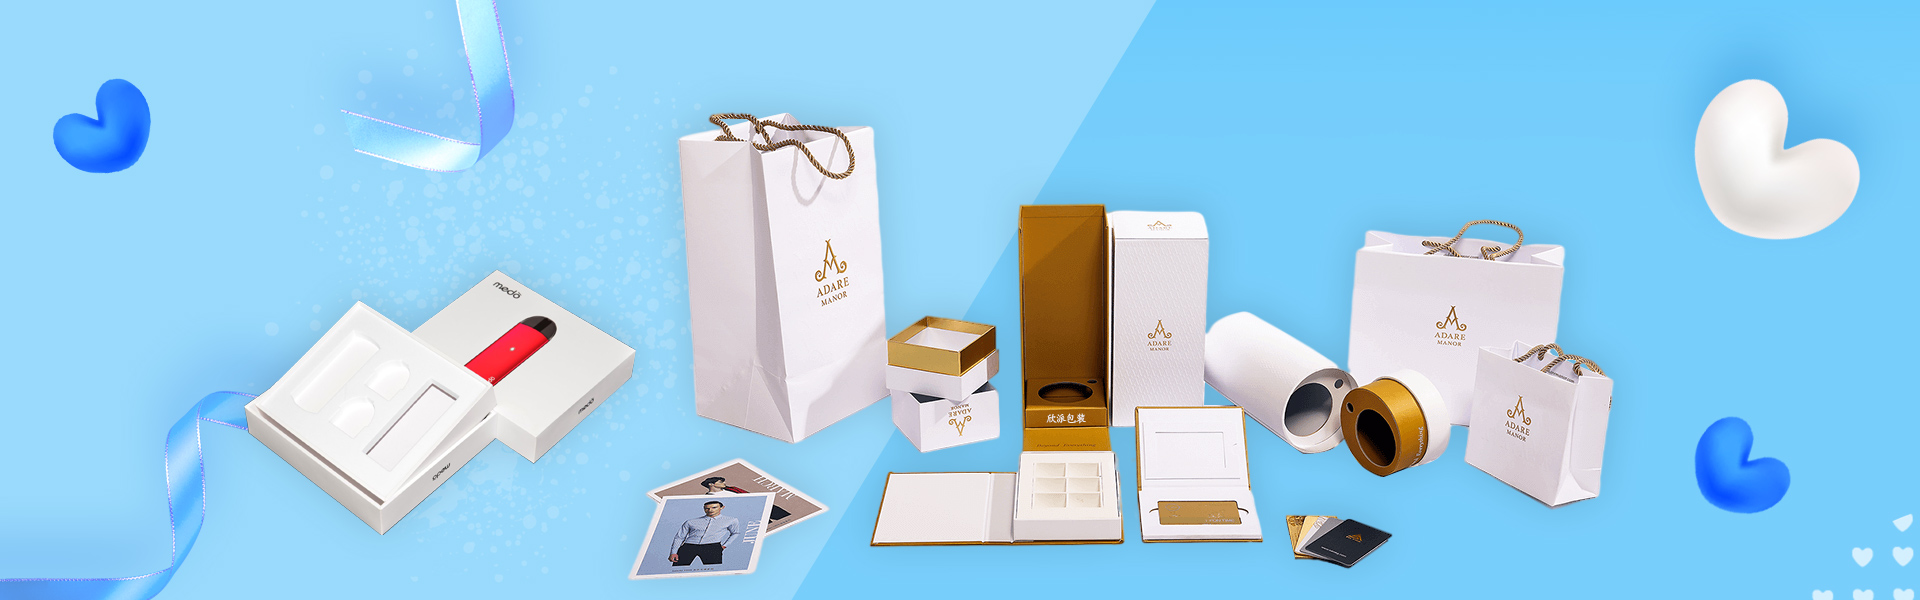 사용자 정의 상자, 선물 상자, 아름다움 상자입니다,Beifan Packaging Co., Ltd.